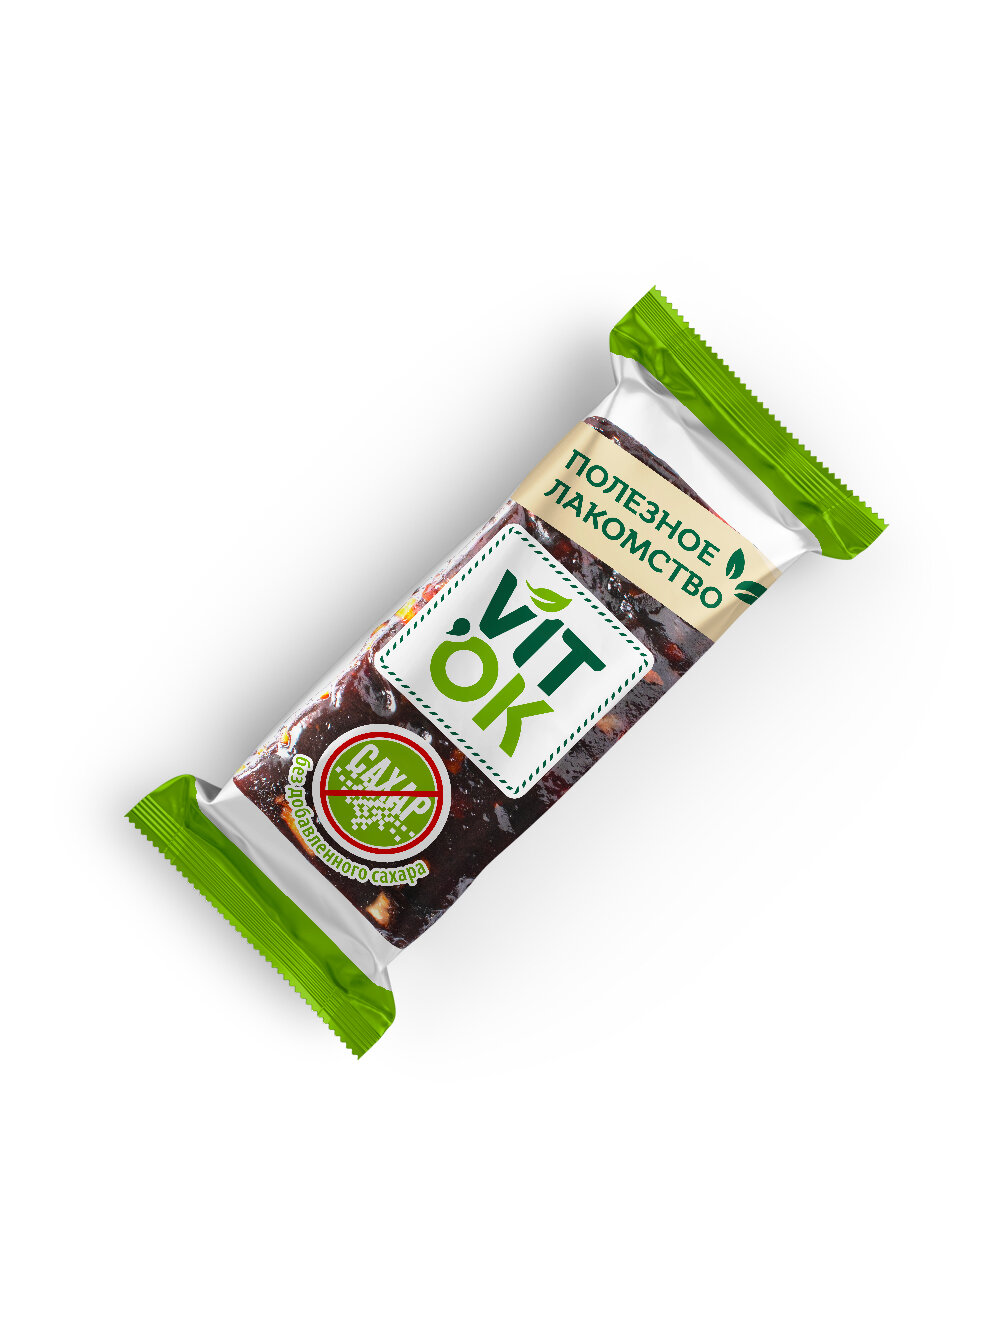 Конфета-батончик Vitok 100% натуральная полезная без сахара Чернослив и орехи, 2 шт по 400 г